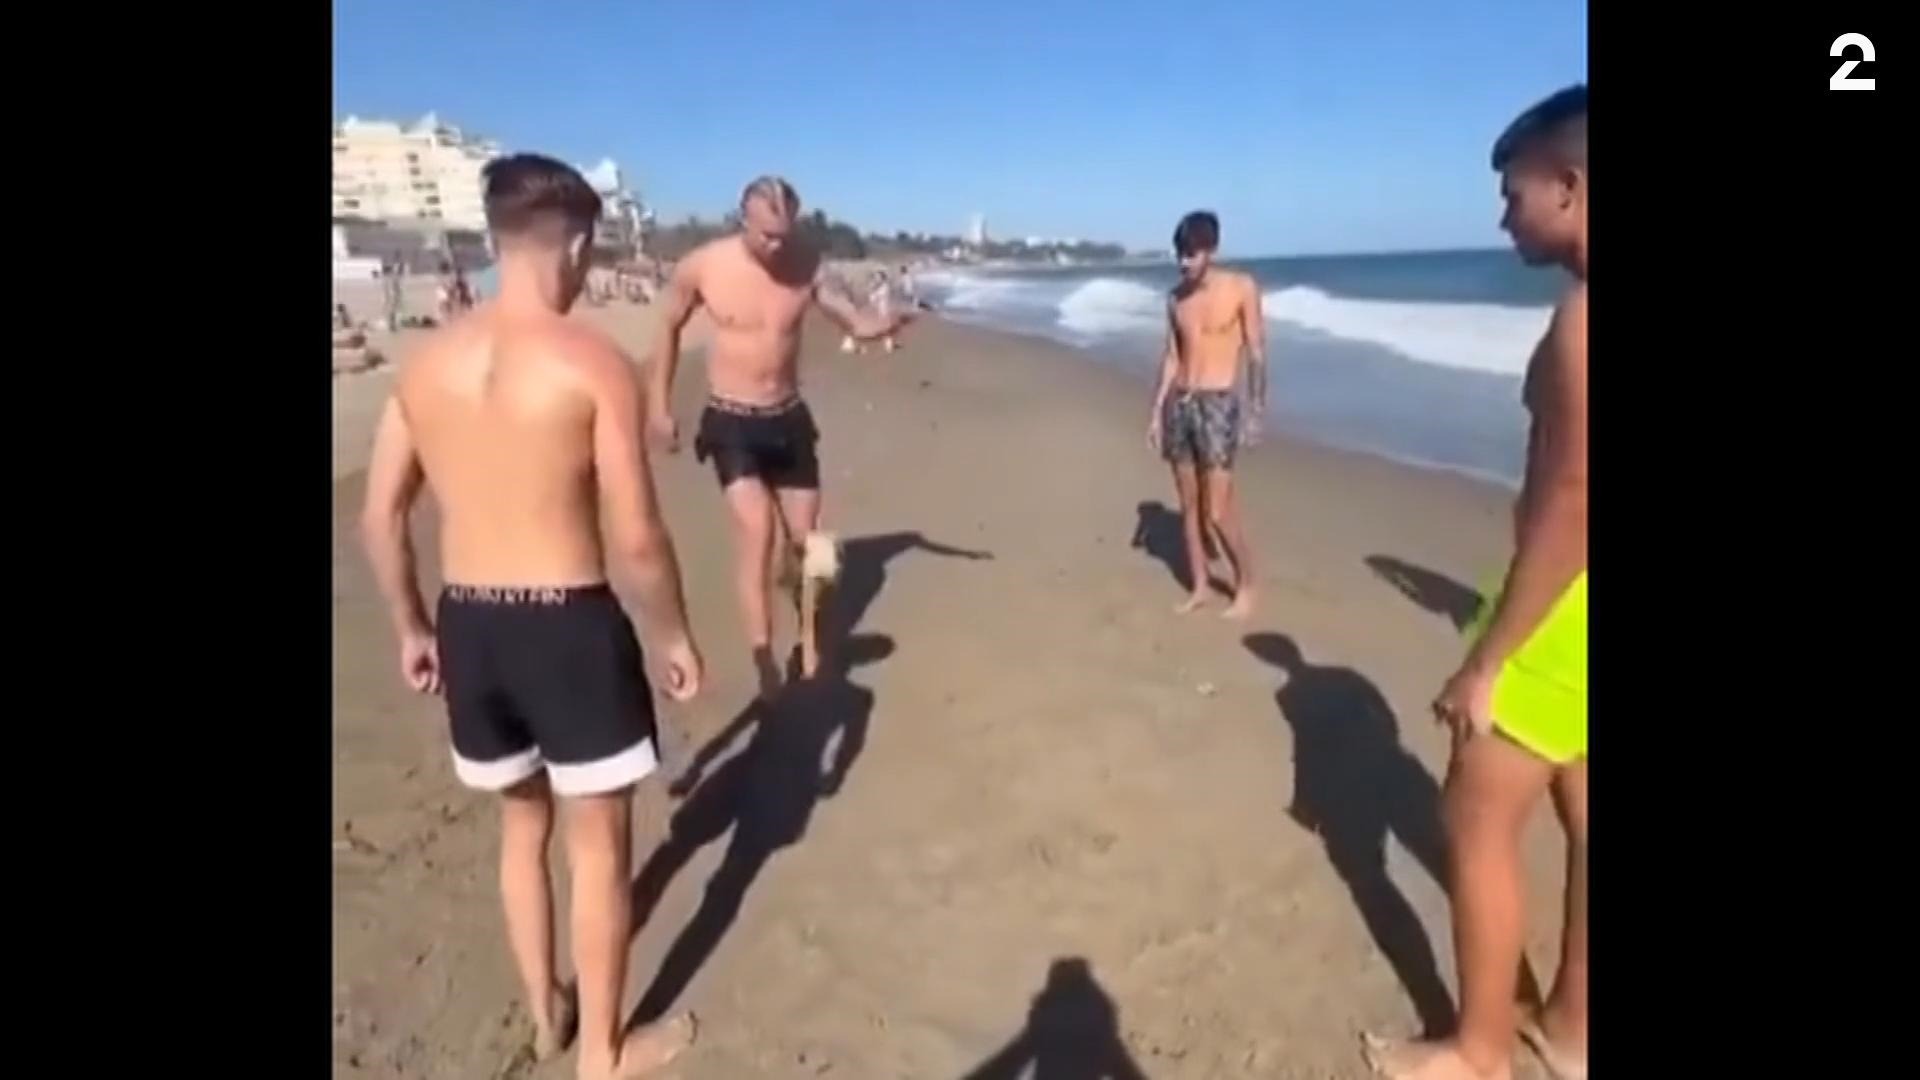 Ser du hvem som spiller fotball med barna på stranda?